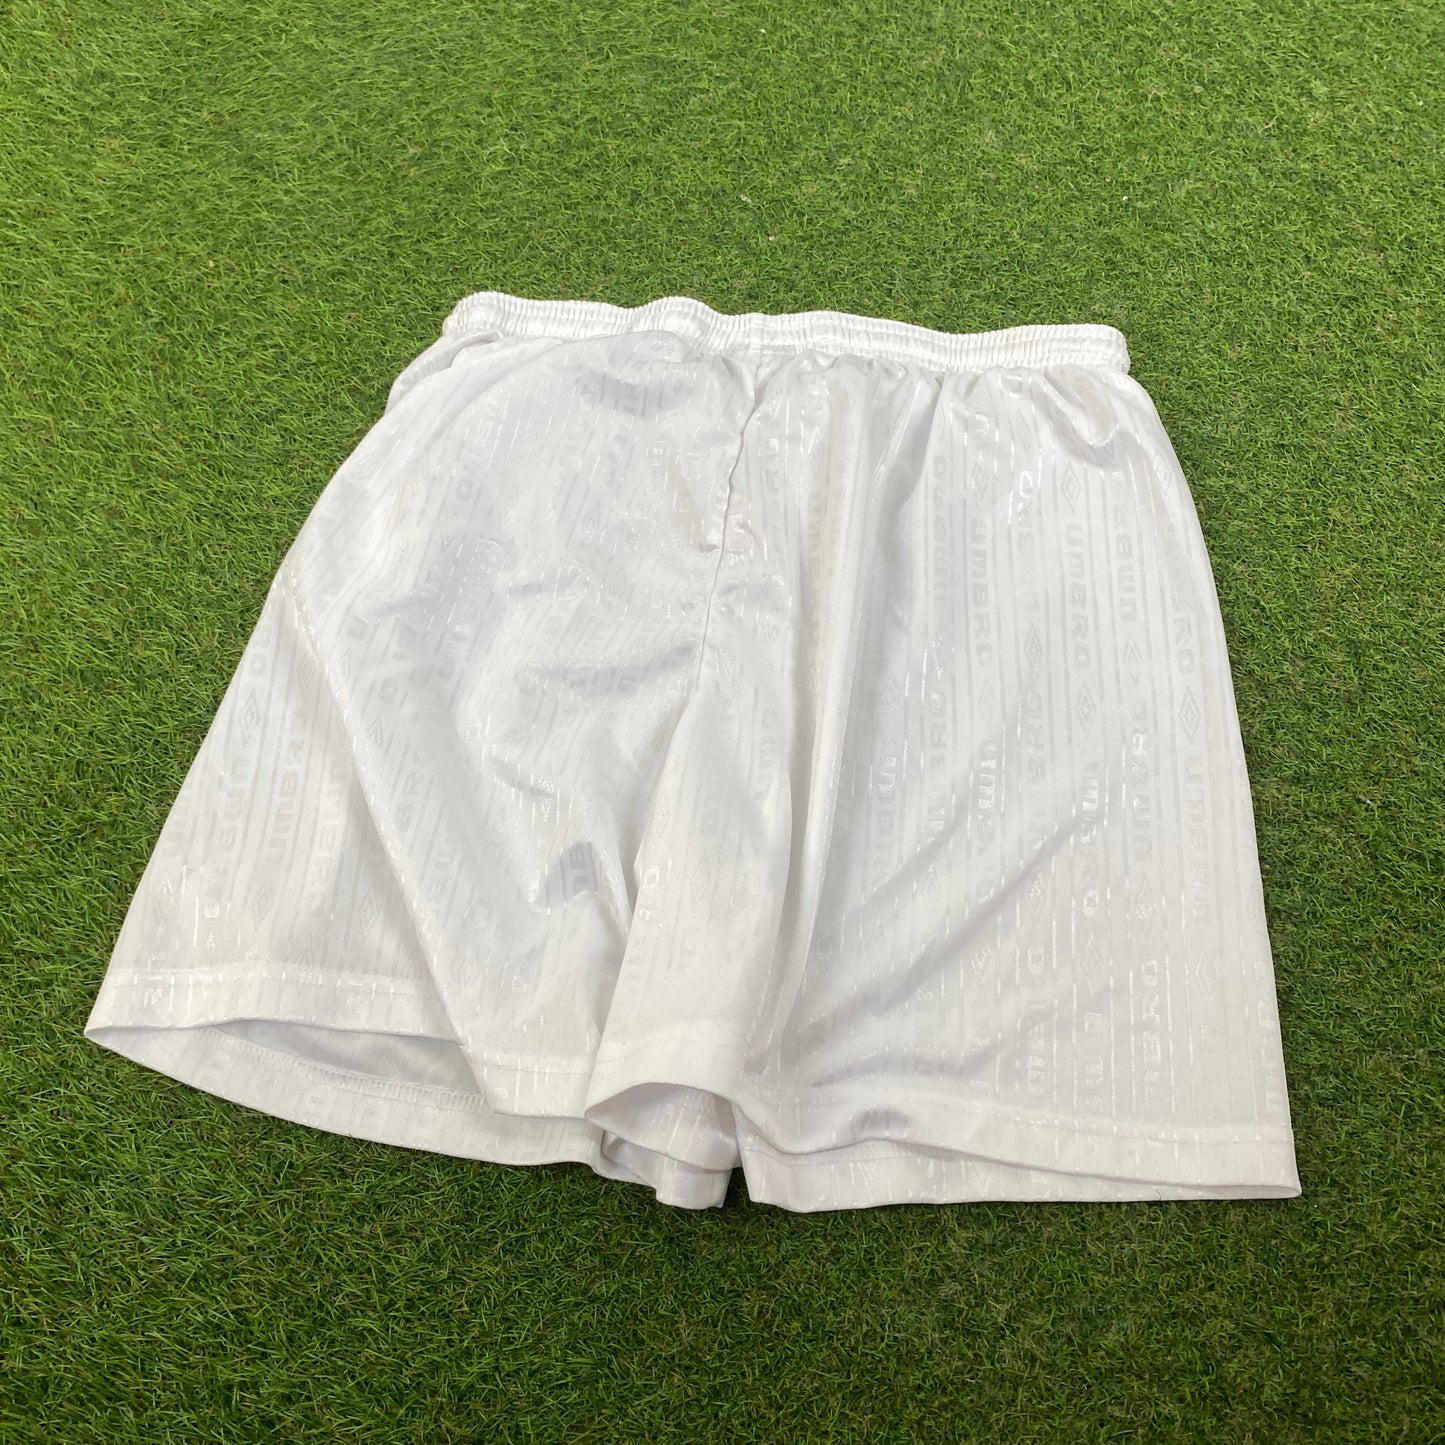 Retro Umbro Football Shorts White XL